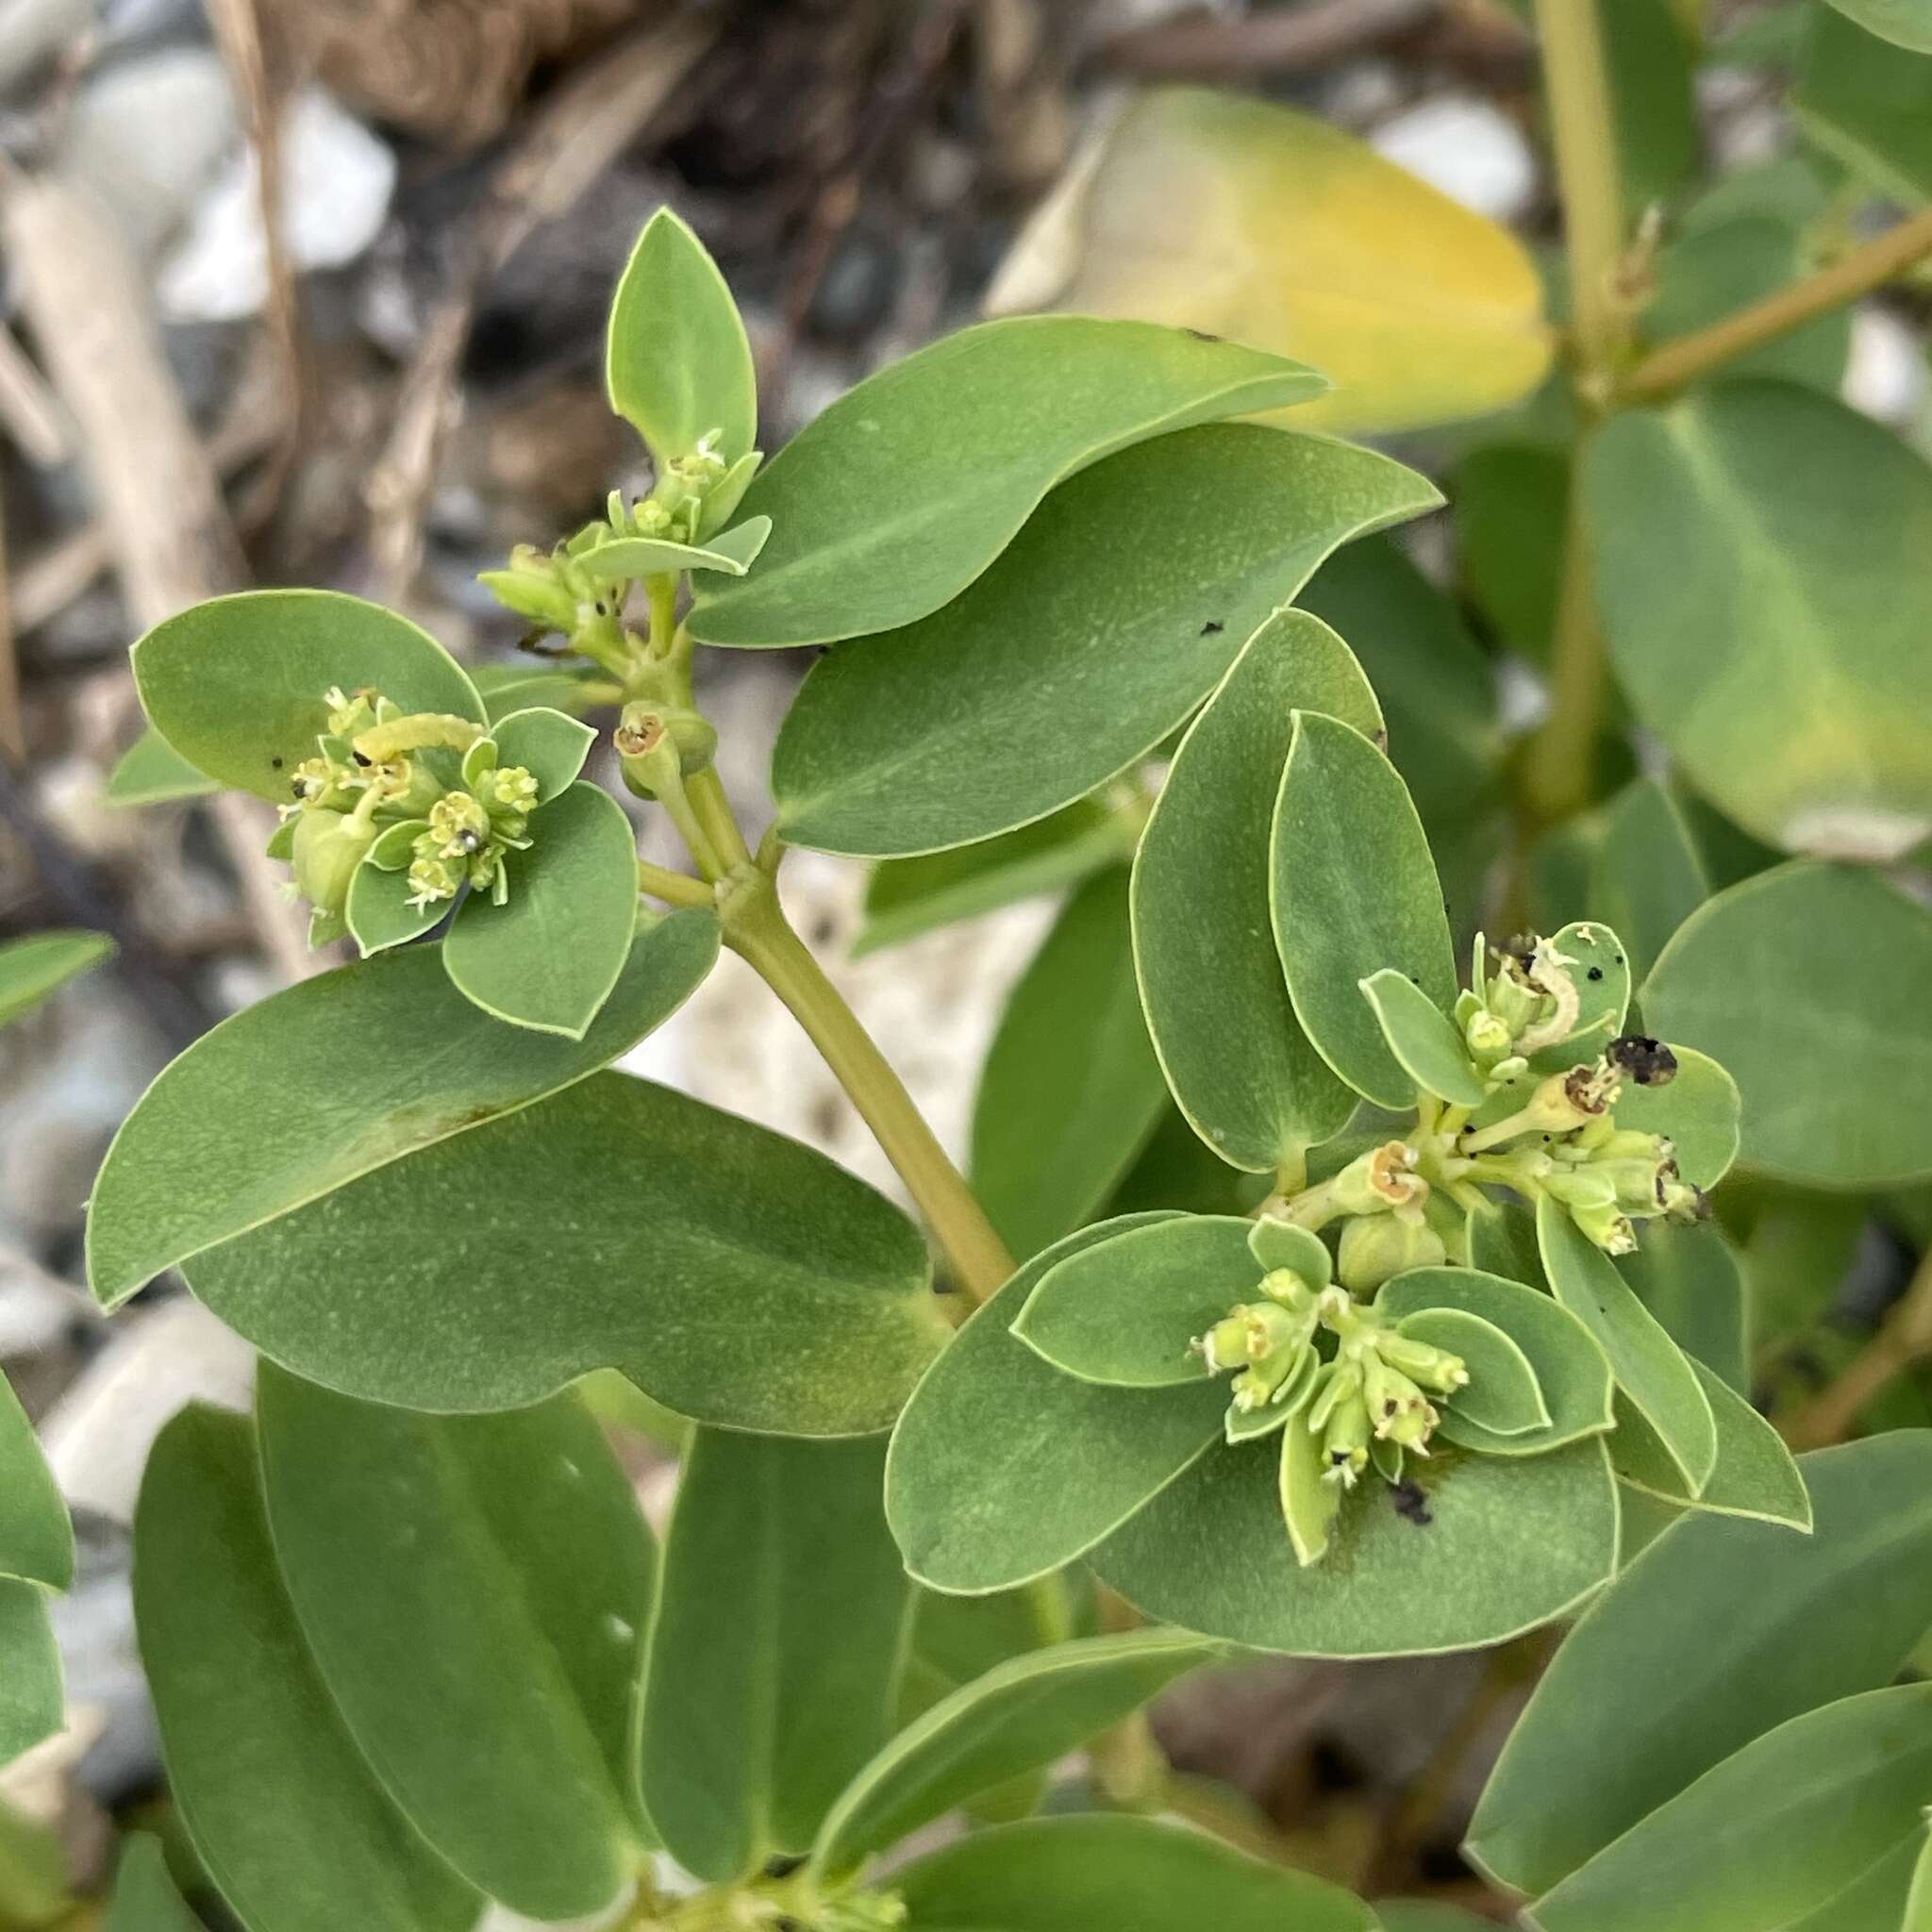 Sivun Euphorbia atoto G. Forst. kuva